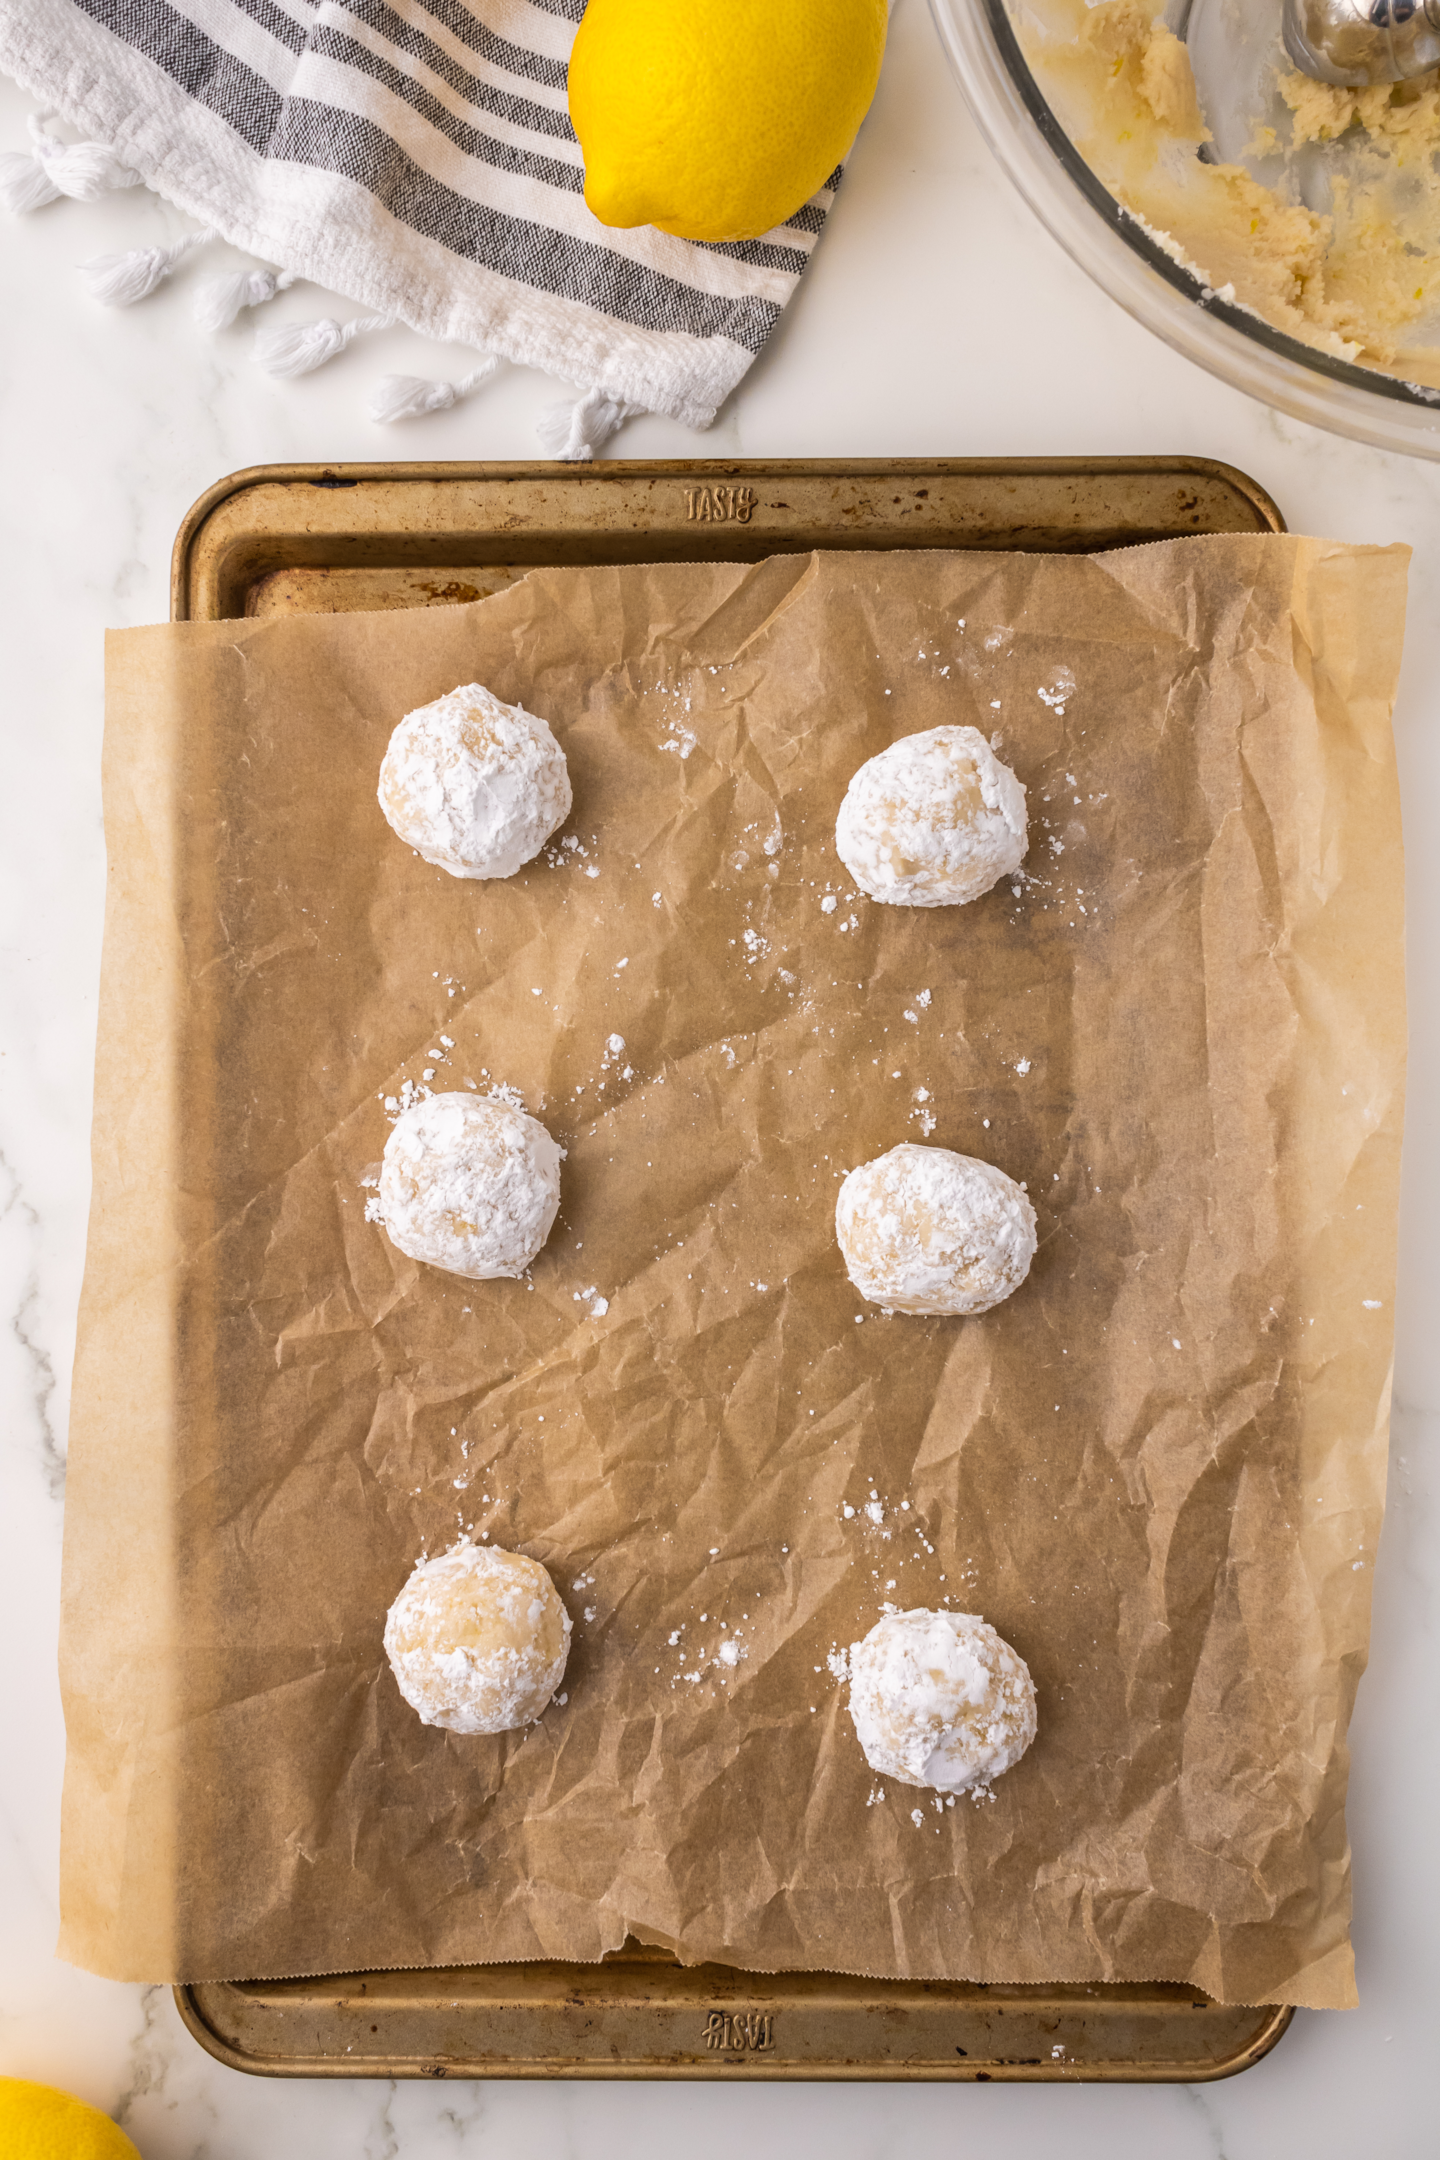 six unbaked lemon crinkle cookies rolled in powdered sugar on baking sheet